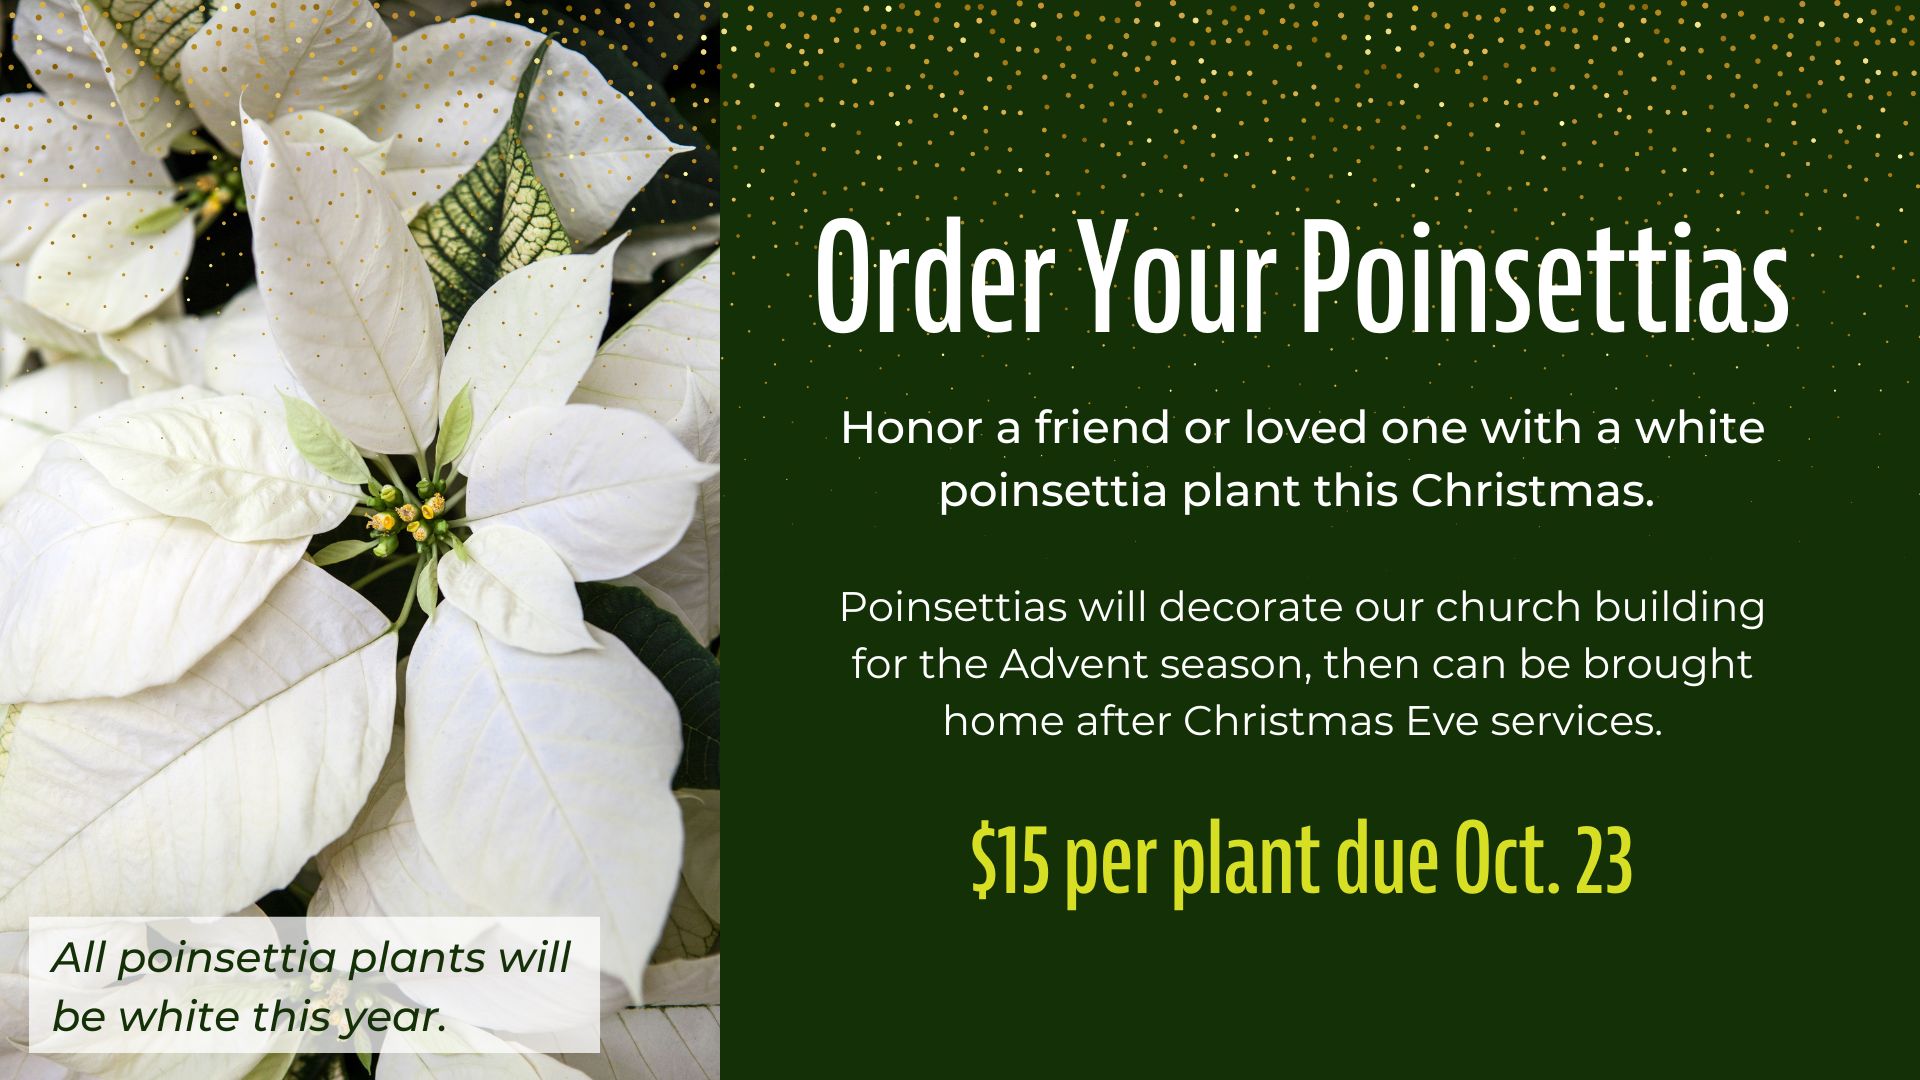 Order Your Poinsettias